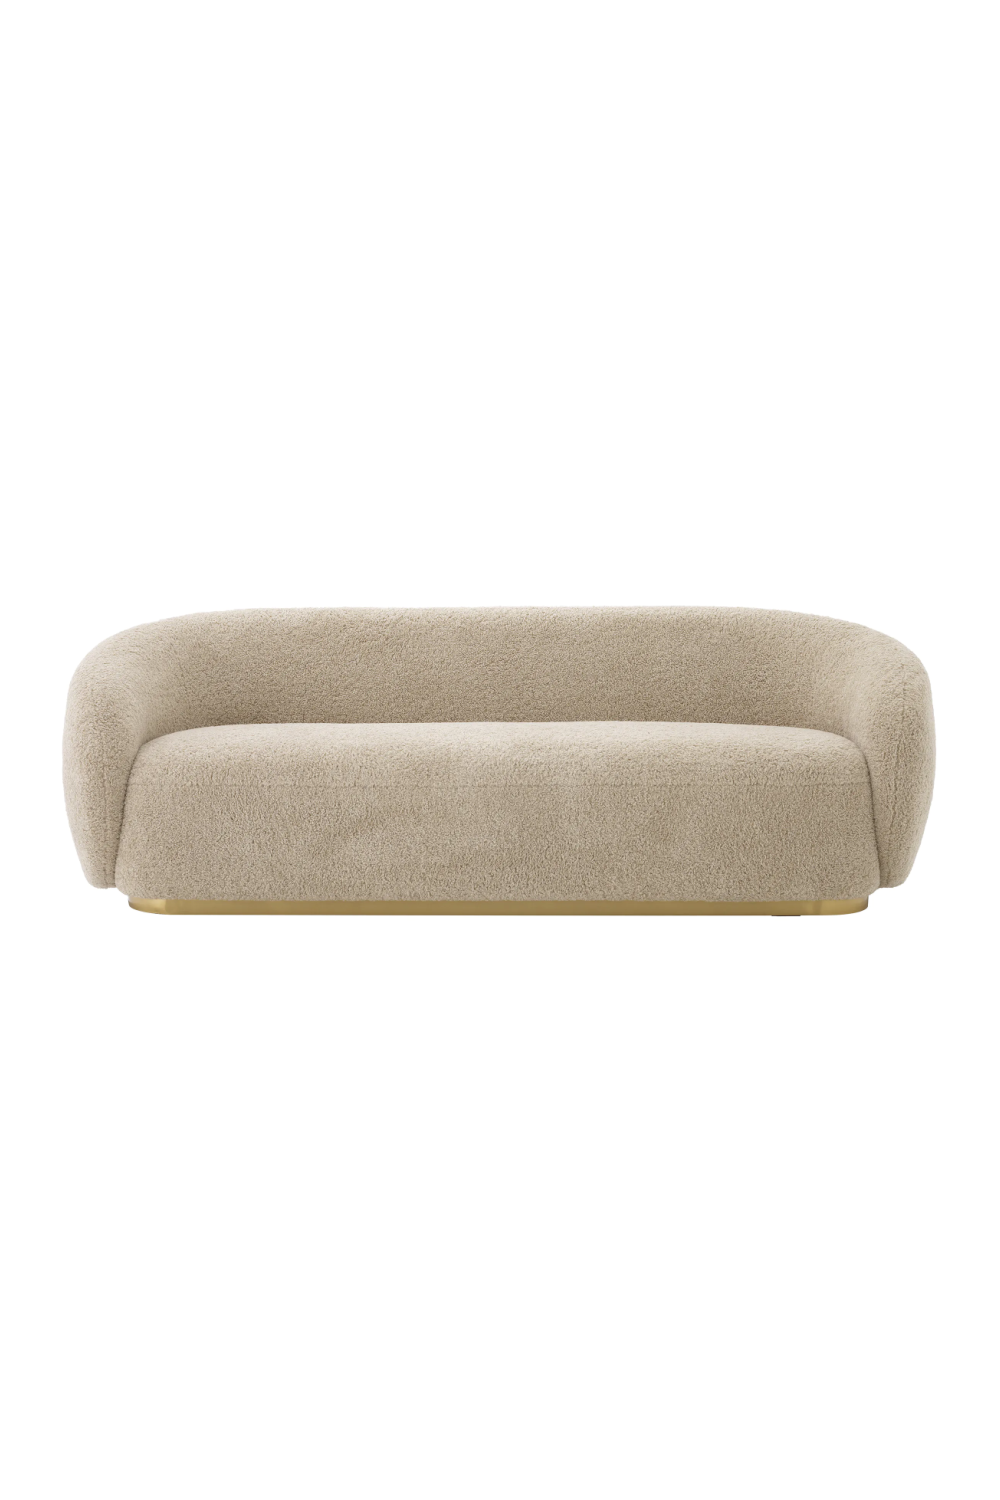 Curved Contemporary Sofa | Eichholtz Brice | Oroa.com